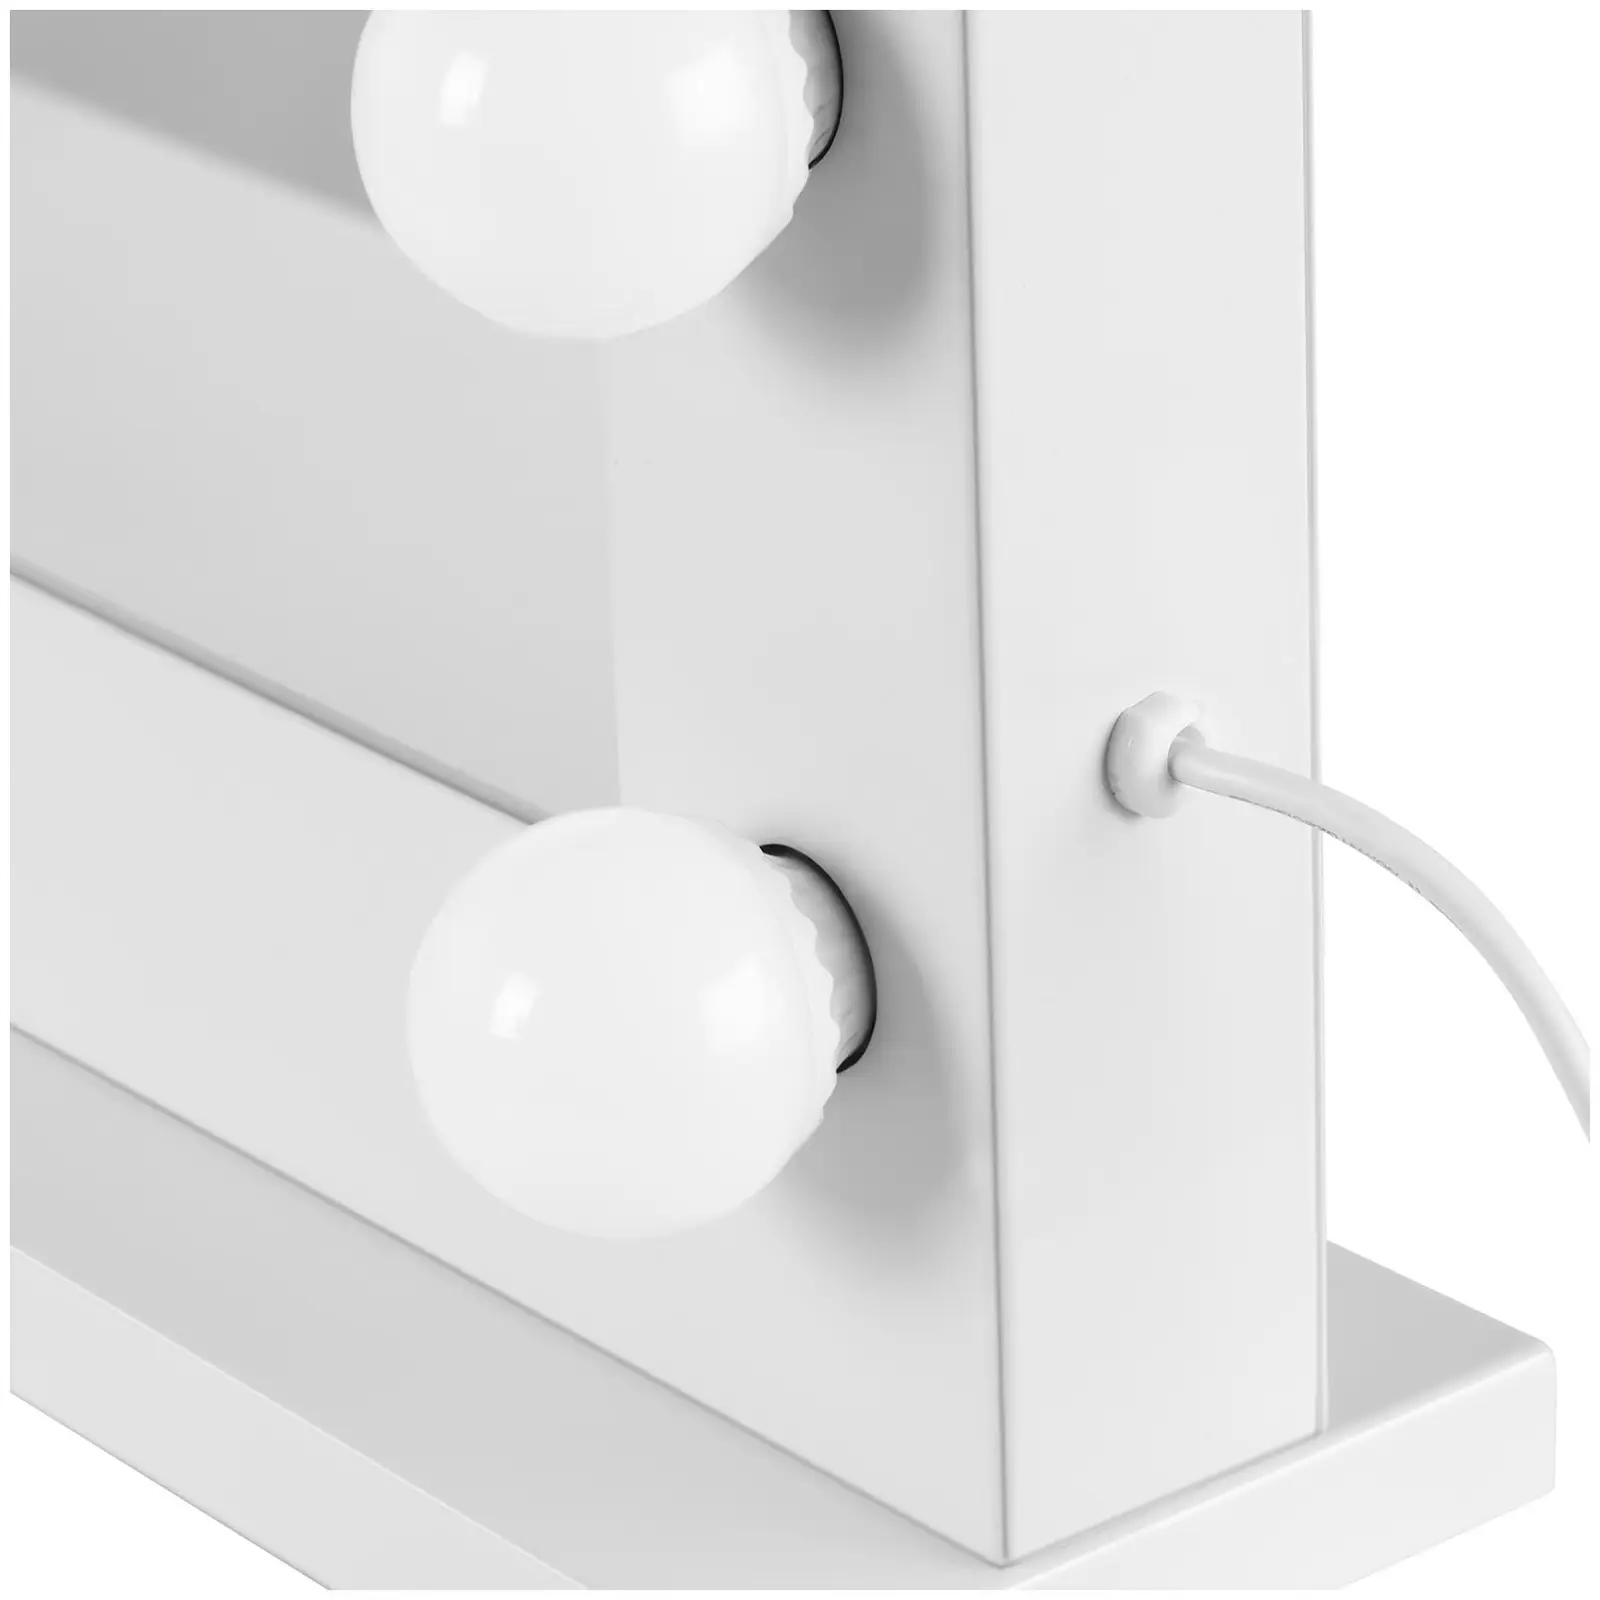 Sminkspegel med belysning - Vit - 14 LED-lampor - Fyrkantig - Högtalare